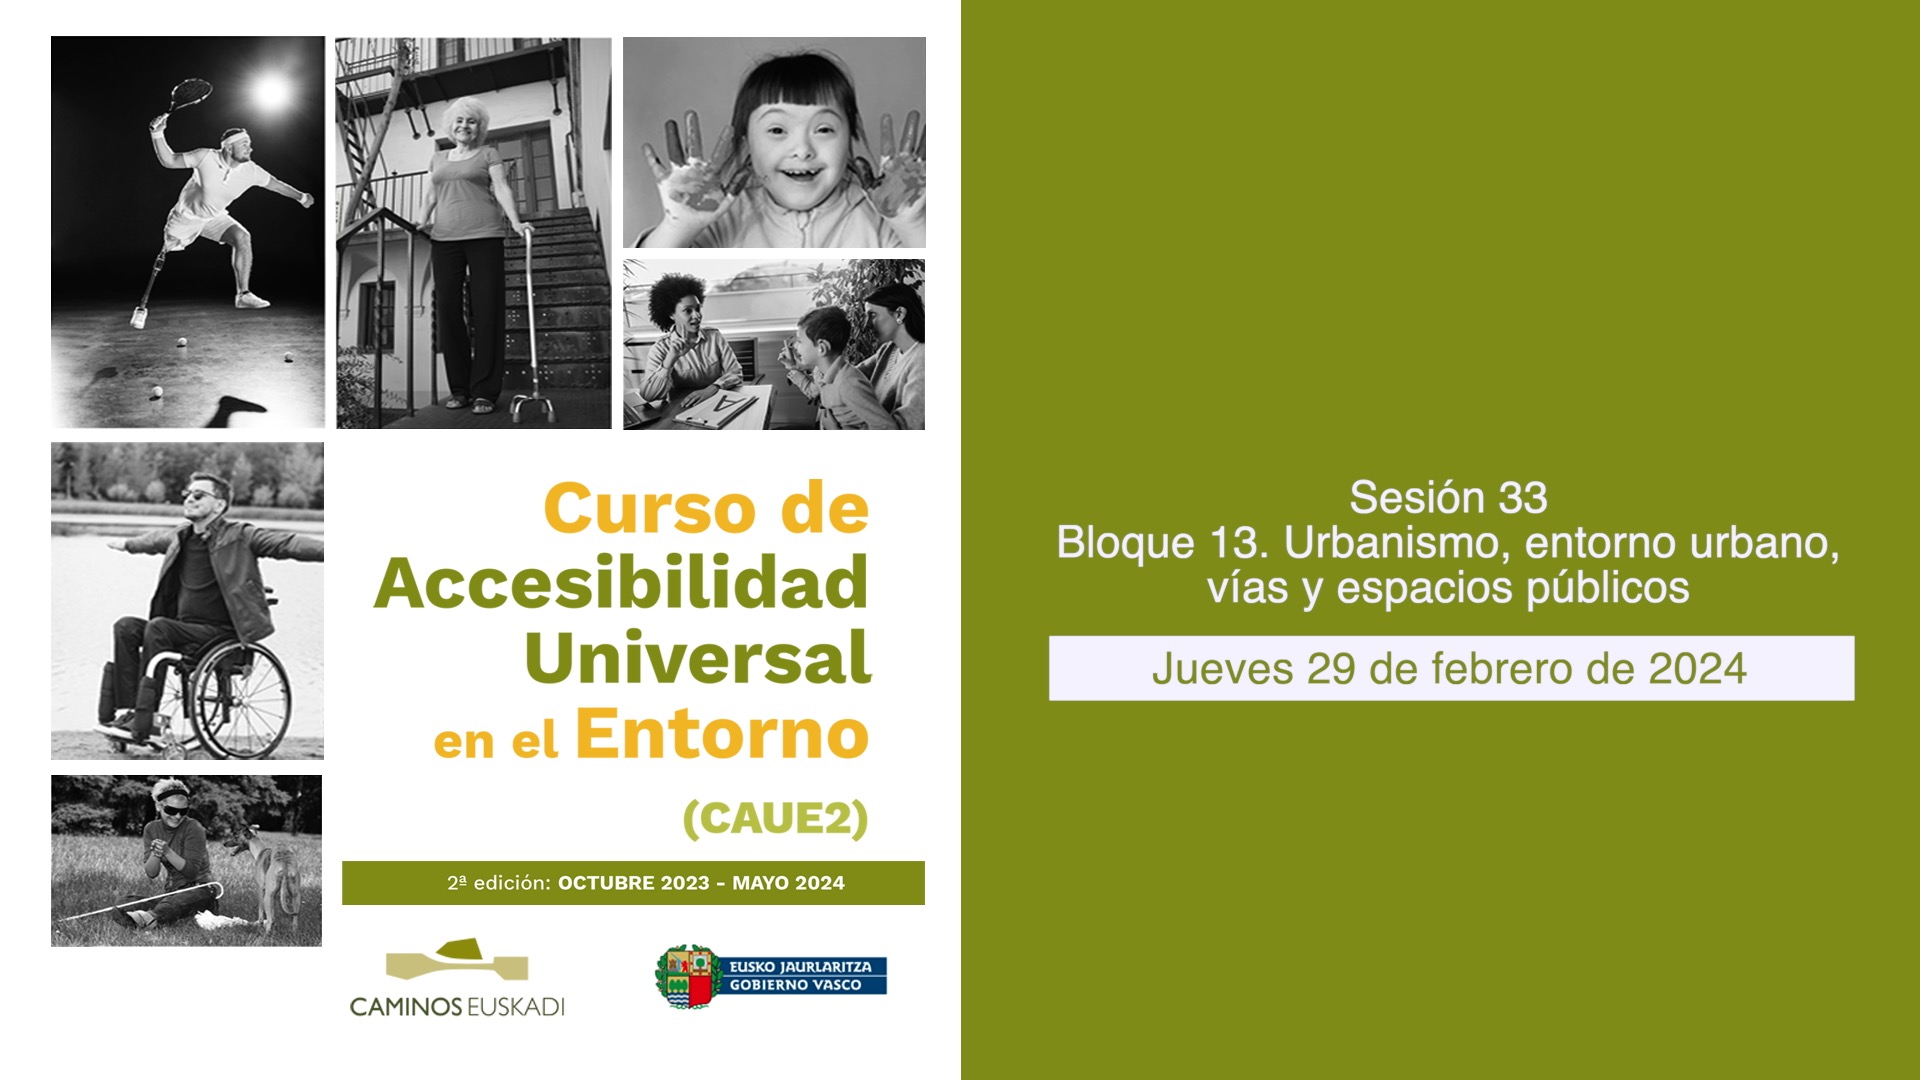 Sesión 33 - Bloque 13. Urbanismo, entorno urbano, vías y espacios públicos.